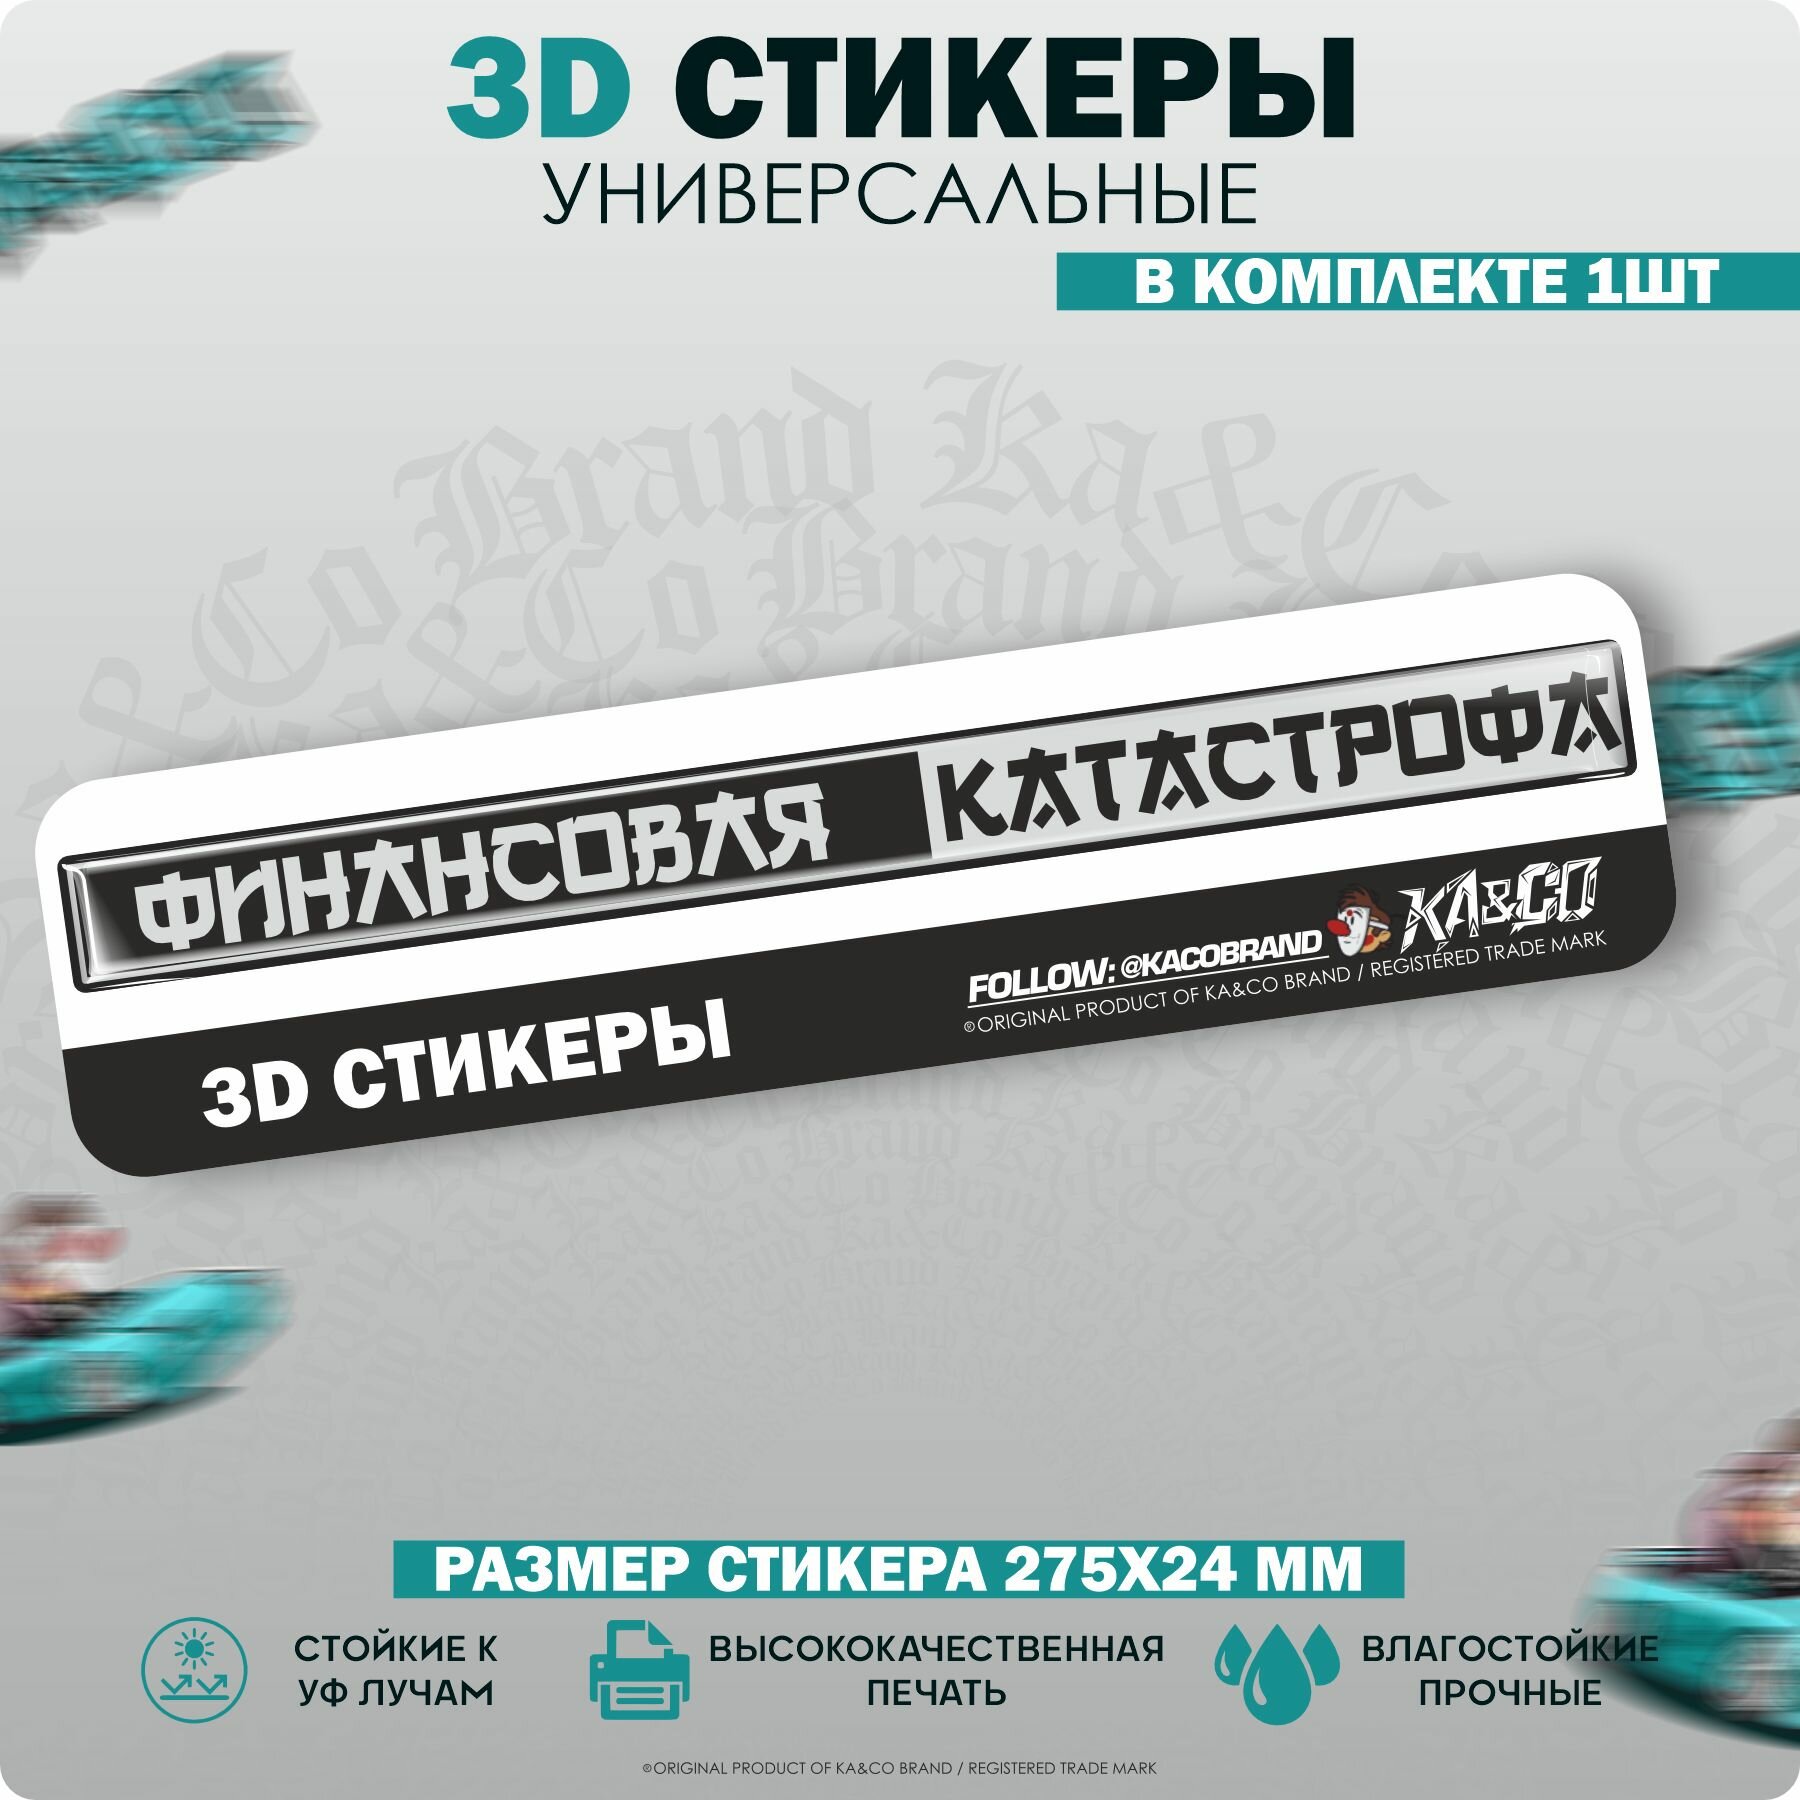 3D Наклейки стикеры шильдик Жигули 2105 2107 Финансовая Катастрофа